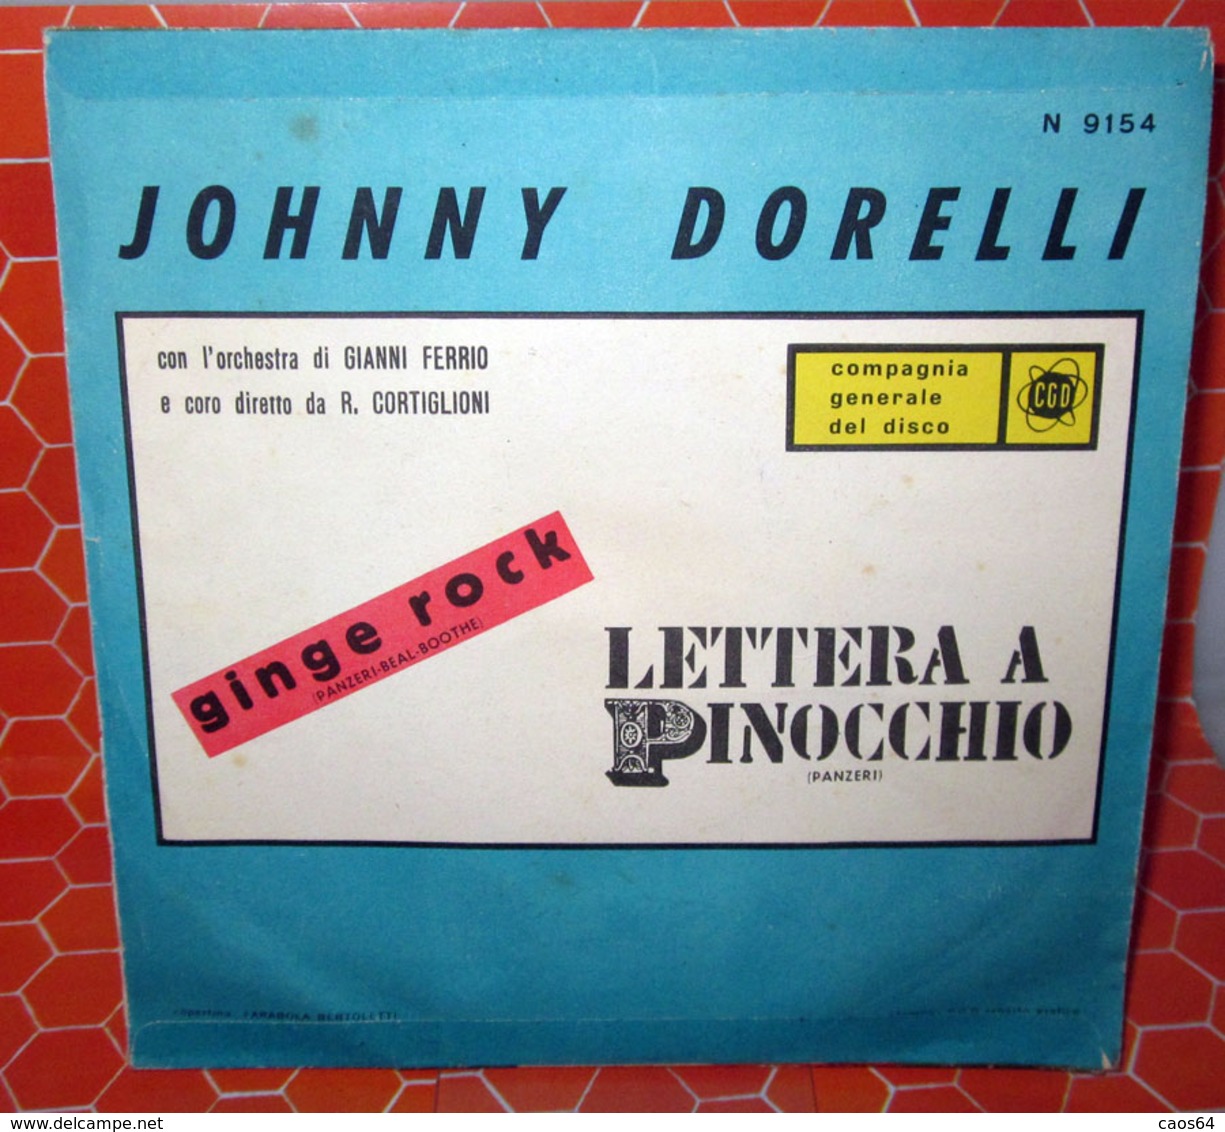 JOHNNY DORELLI LETTERA A PINOCCHIO - Altri - Musica Italiana